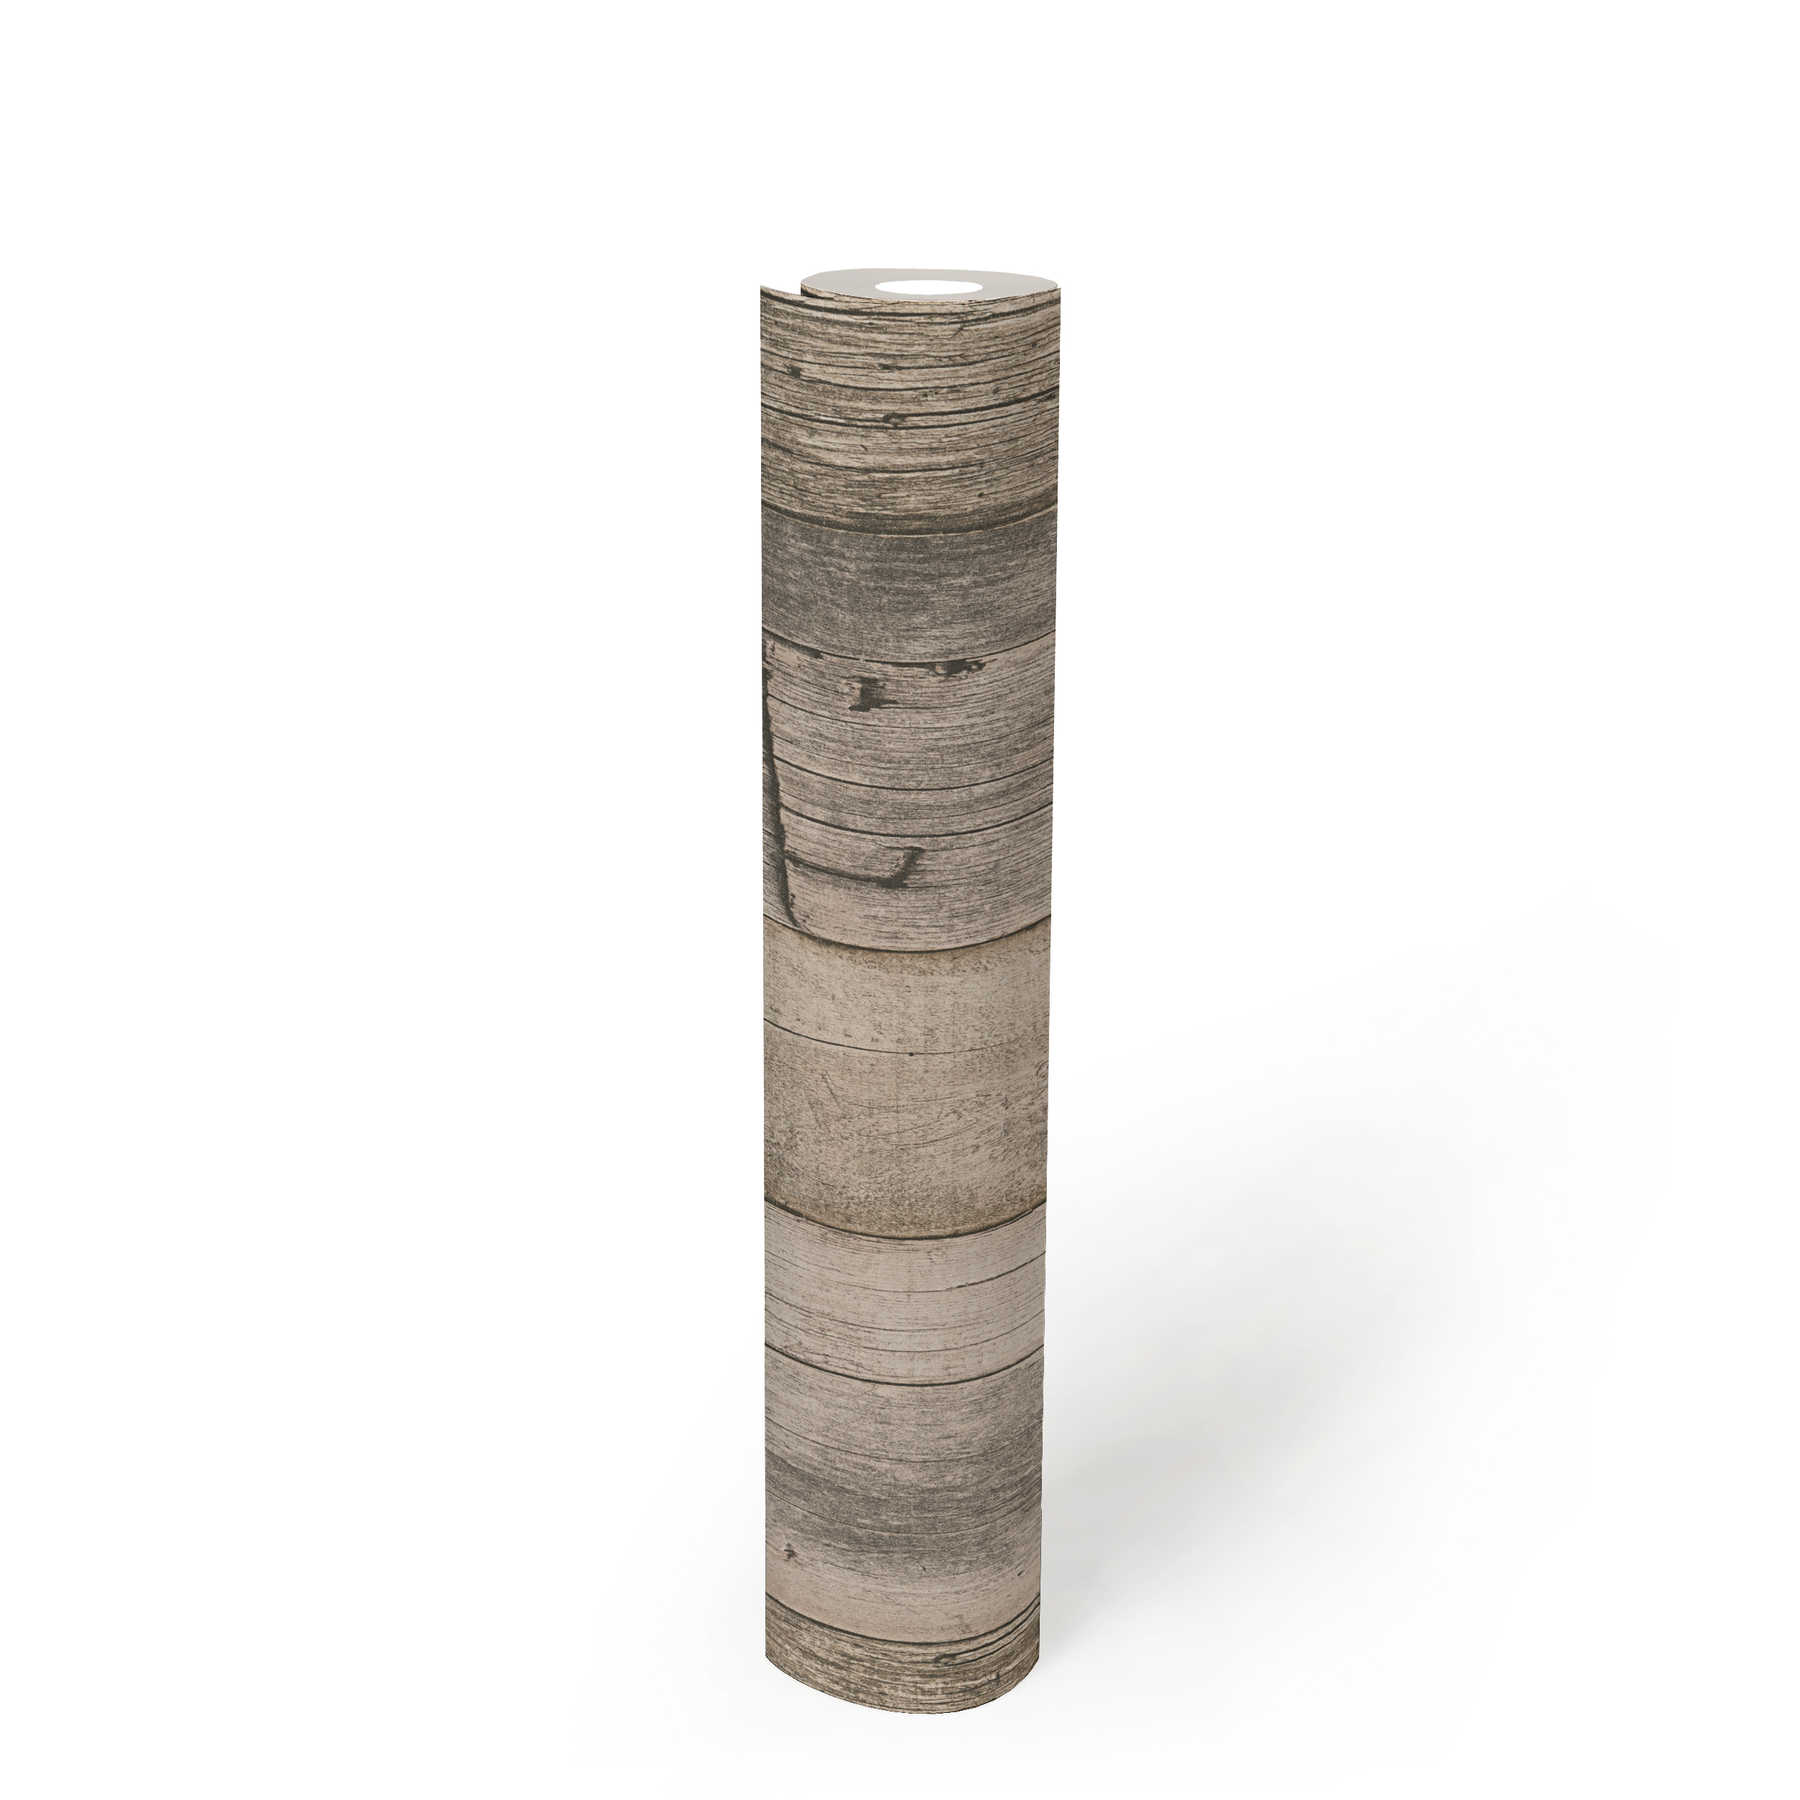             Holztapete mit Brettern im rustikalen Industrial Design – Beige, Schwarz, Creme
        